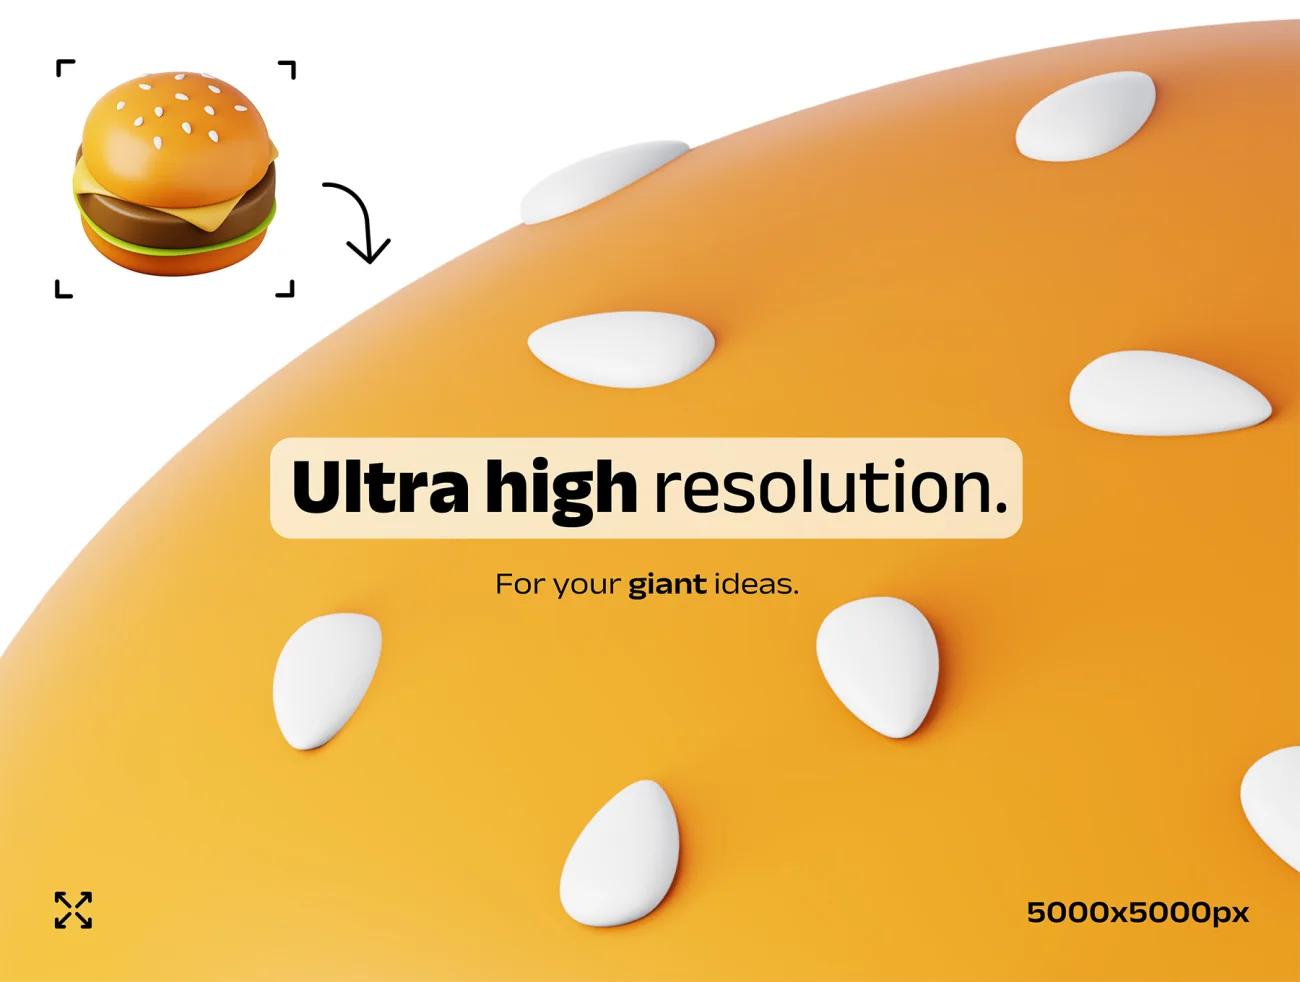 100款高质量表情天气食品3D图标模型素材 50 unique 3D icons .psd .figma .procreate插图13